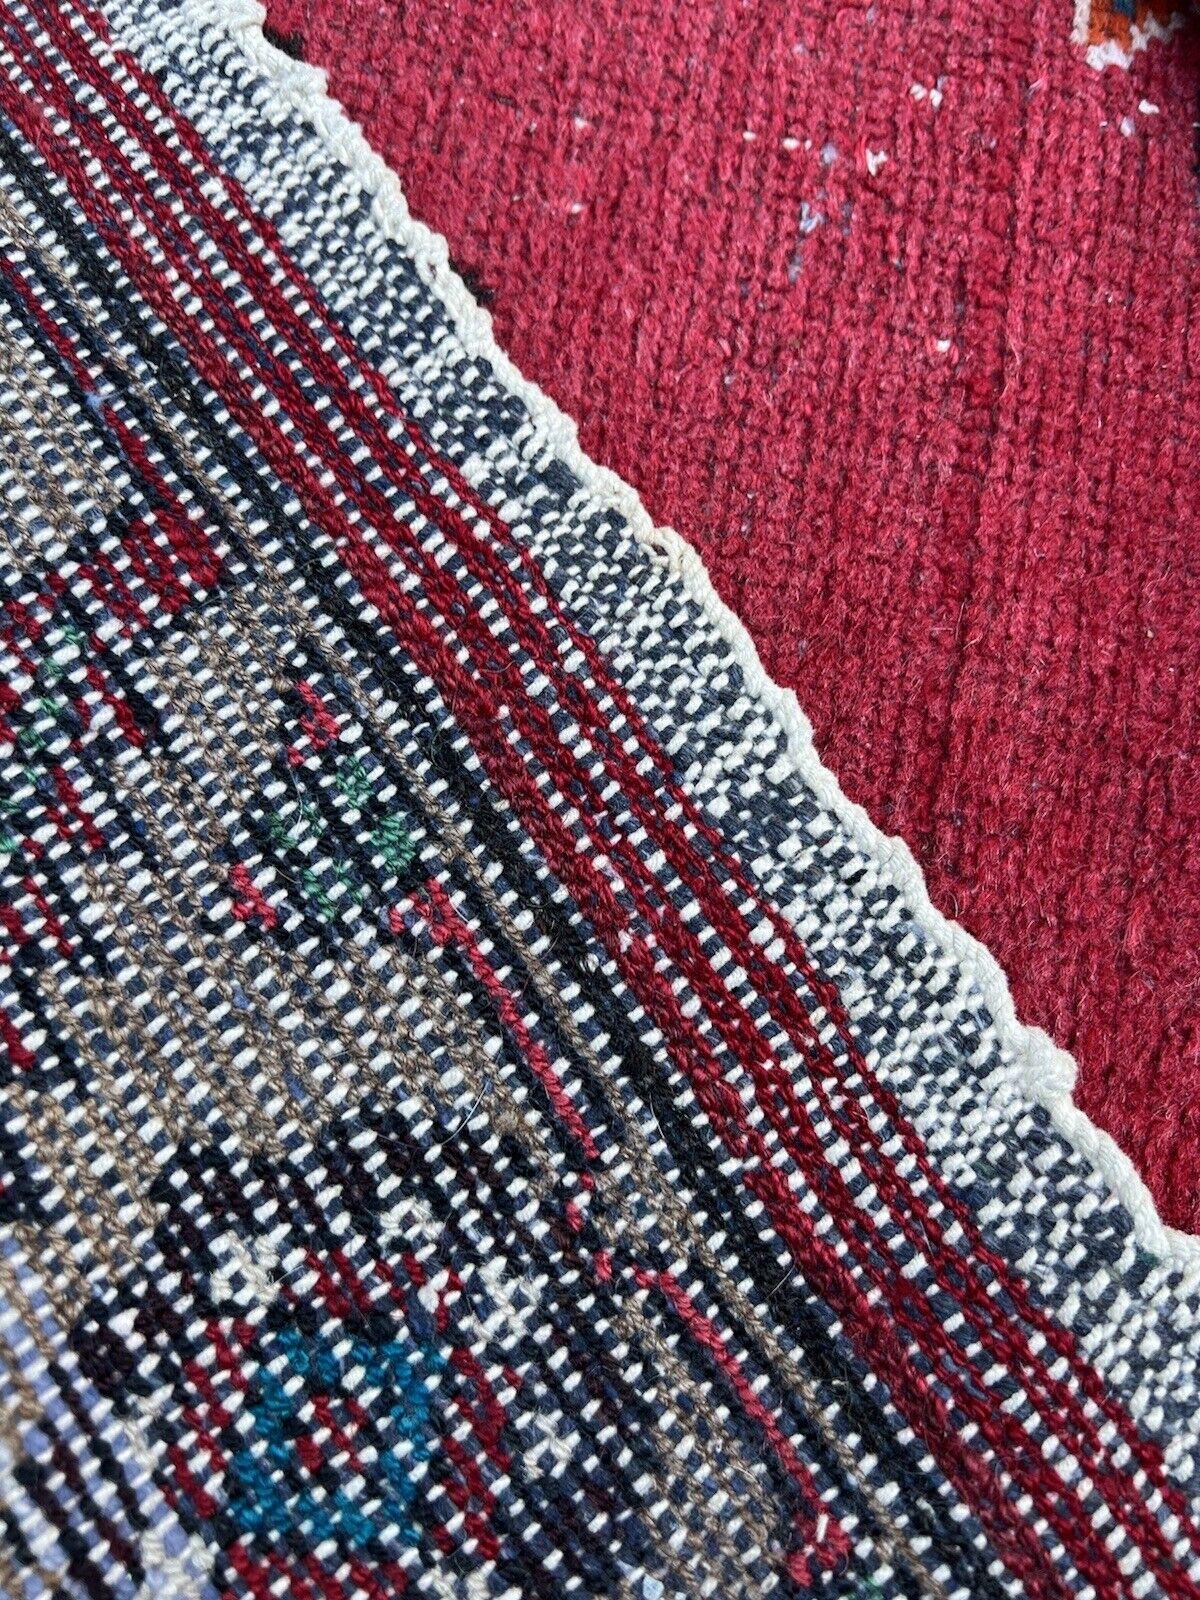 Tauchen Sie mit diesem handgefertigten Hamadan-Teppich im persischen Vintage-Stil in die reiche Welt der Geschichte ein. Dieser aus den 1950er Jahren stammende Teppich misst 3,8' x 6,6' (116cm x 204cm) und ist ein Zeugnis für das dauerhafte Erbe der